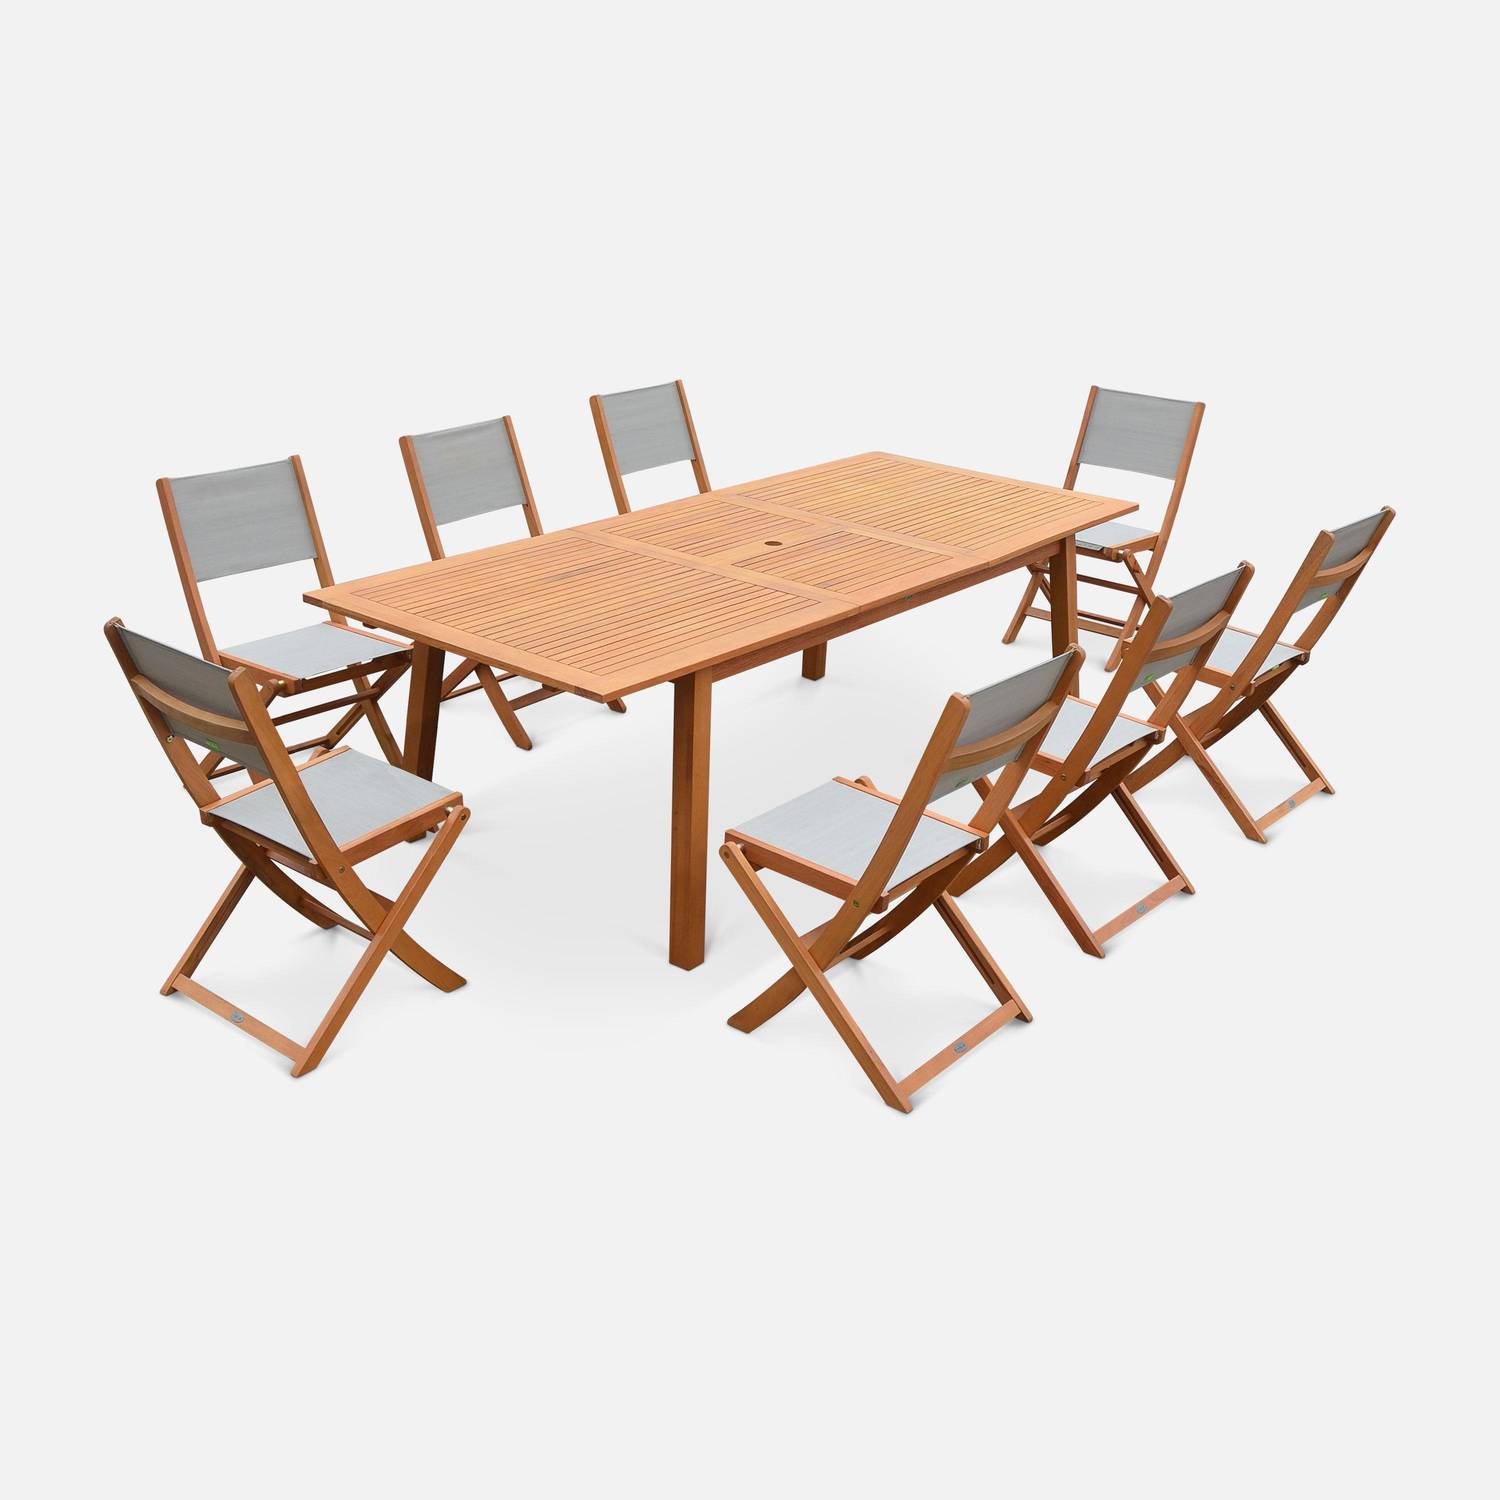 Gartengarnitur aus Holz, großer Tisch 180/240 cm mit Verlängerung, 8 Stühle aus geöltem FSC-Eukalyptusholz und taupegrauem Textilene - Almeria Photo1